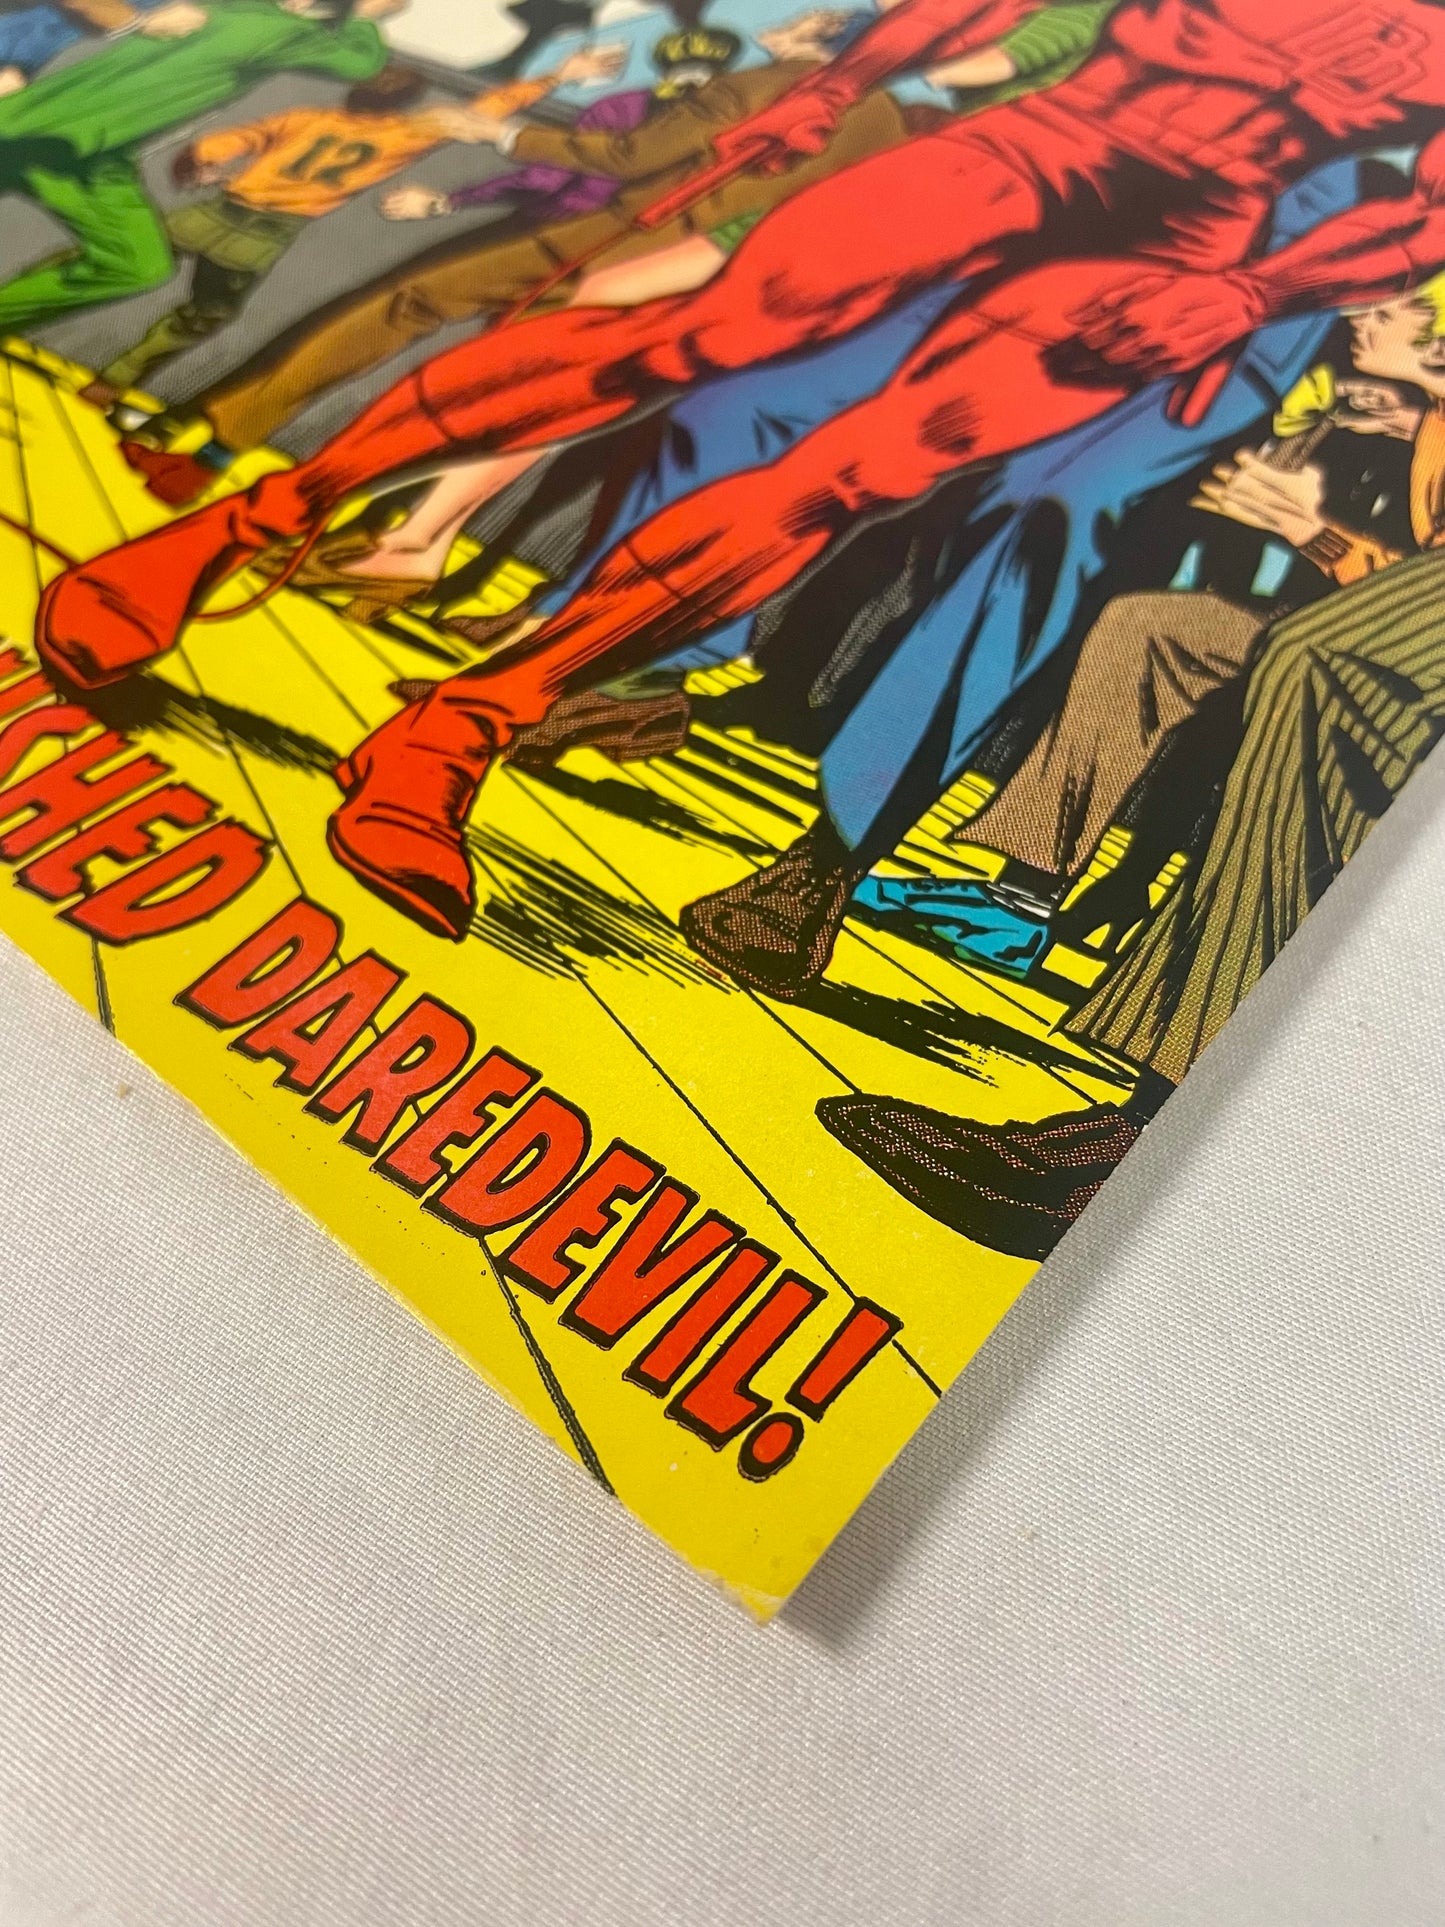 Marvel Comics: Daredevil #62